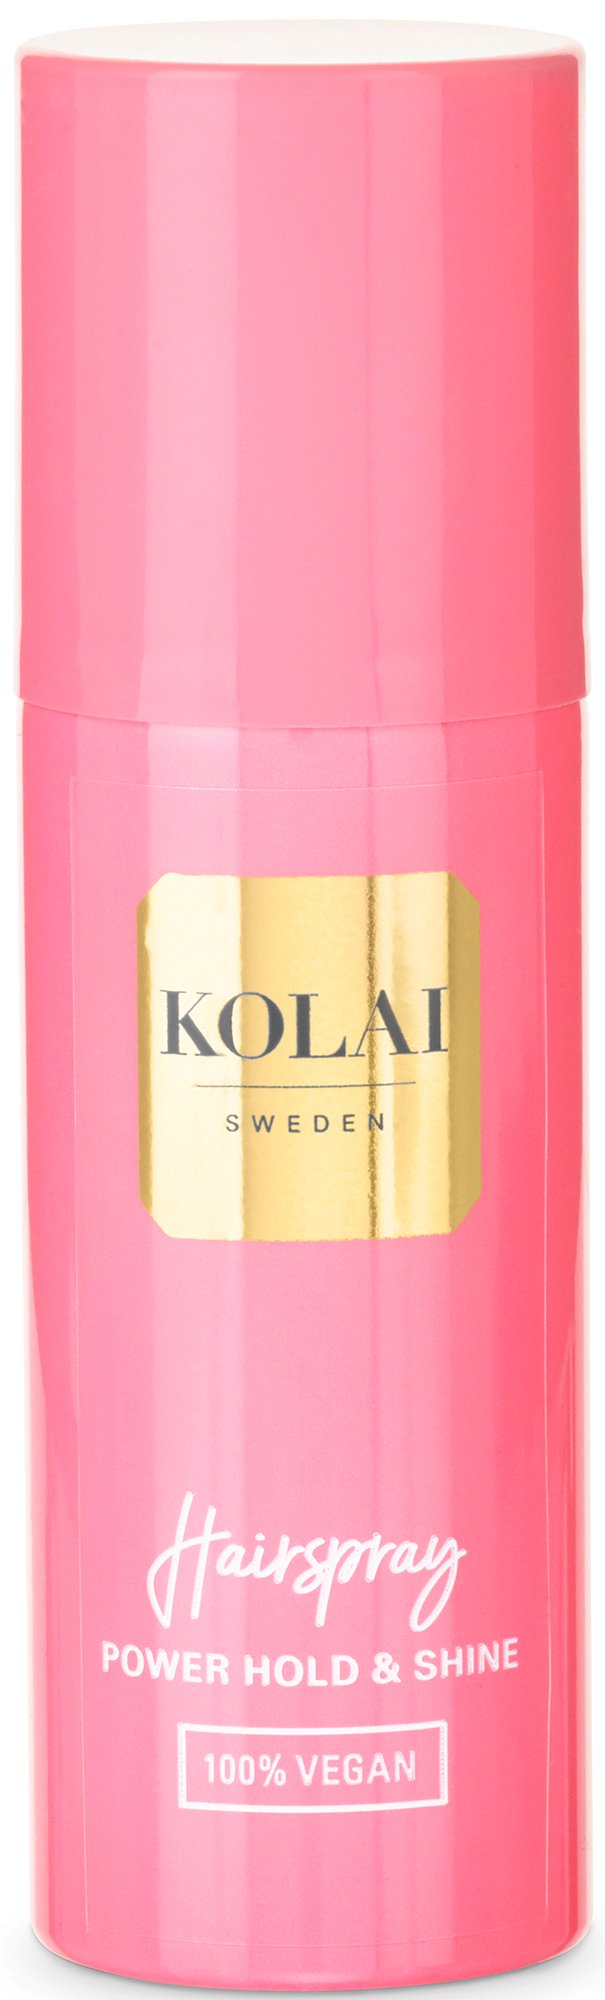 KOLAI Hairspray 50 ml